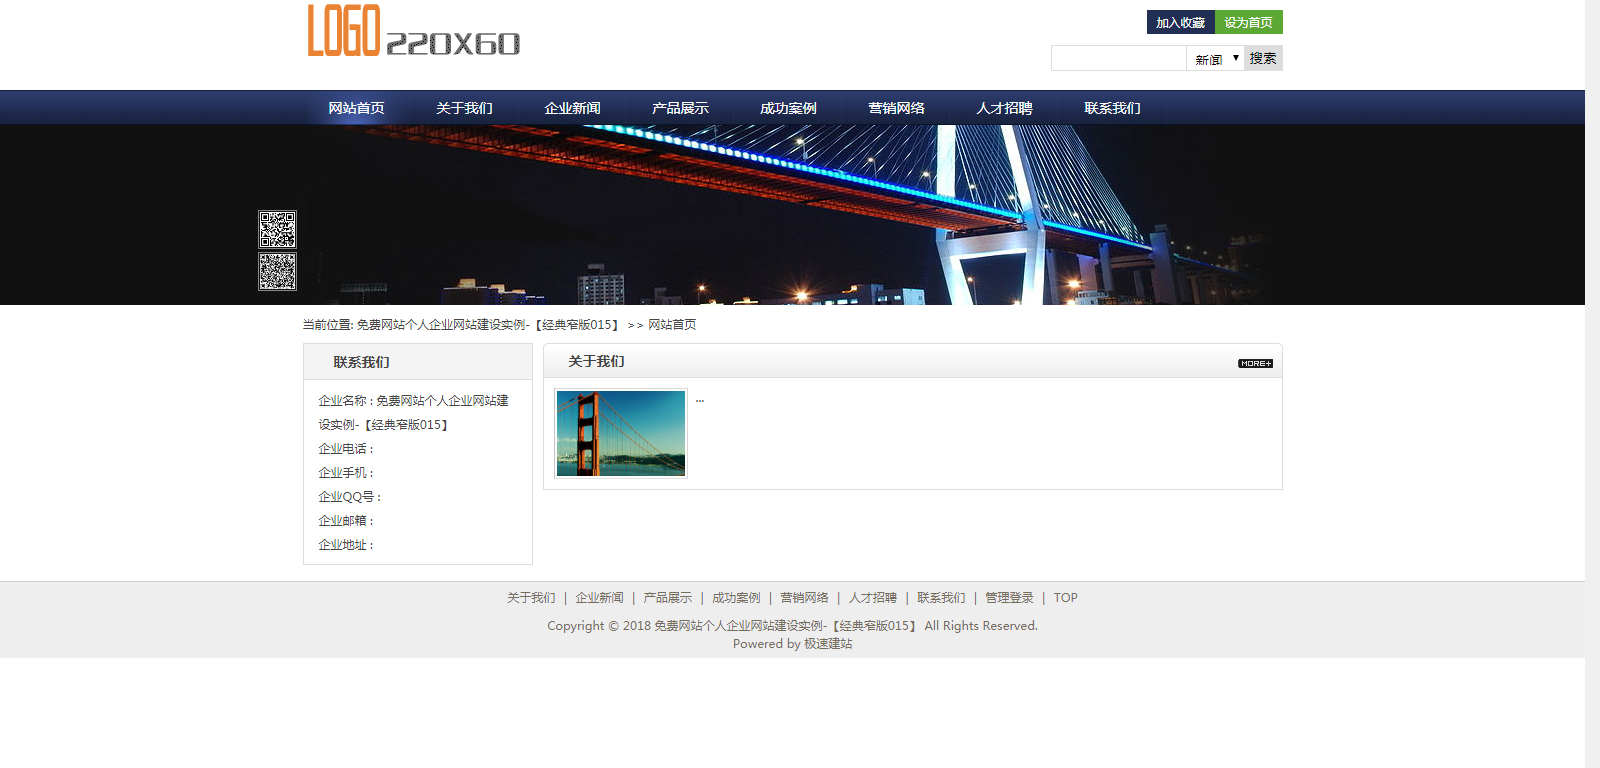 藏青蓝经典窄版免费网站个人企业自助建站模板-015#网站建设 (1).png